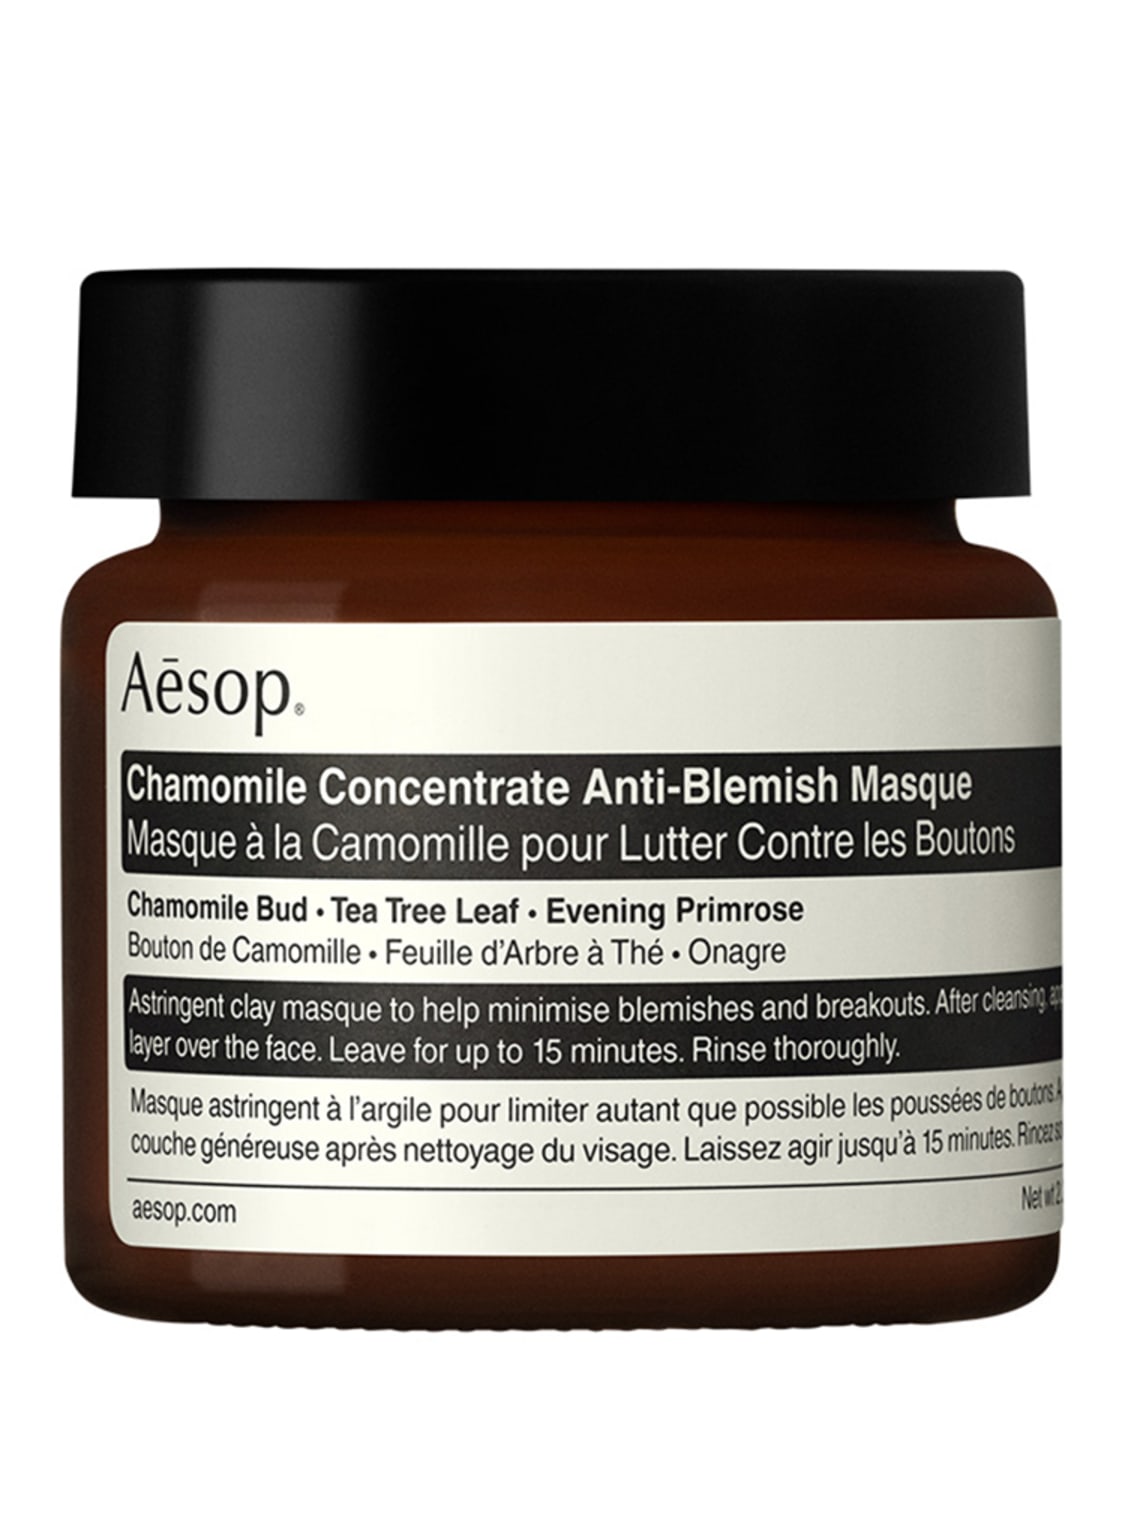 Image of Aesop Camomille Anti Blemish Masque Reinigungsmaske 60 ml